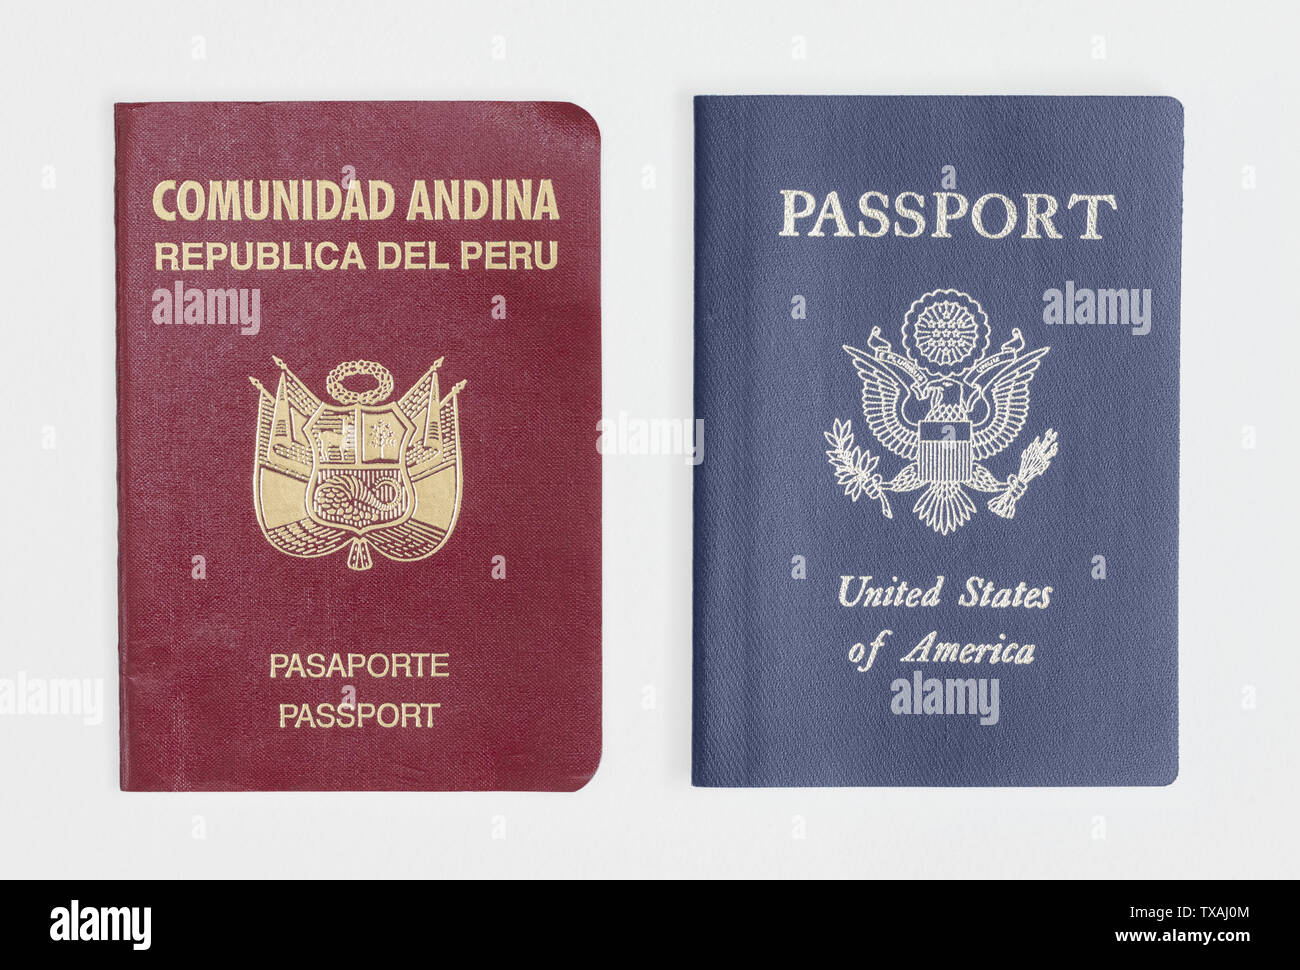 Londres/UK - 21 Junio 2019 - Perú y pasaportes estadounidenses, aislado en un fondo blanco. Foto de stock